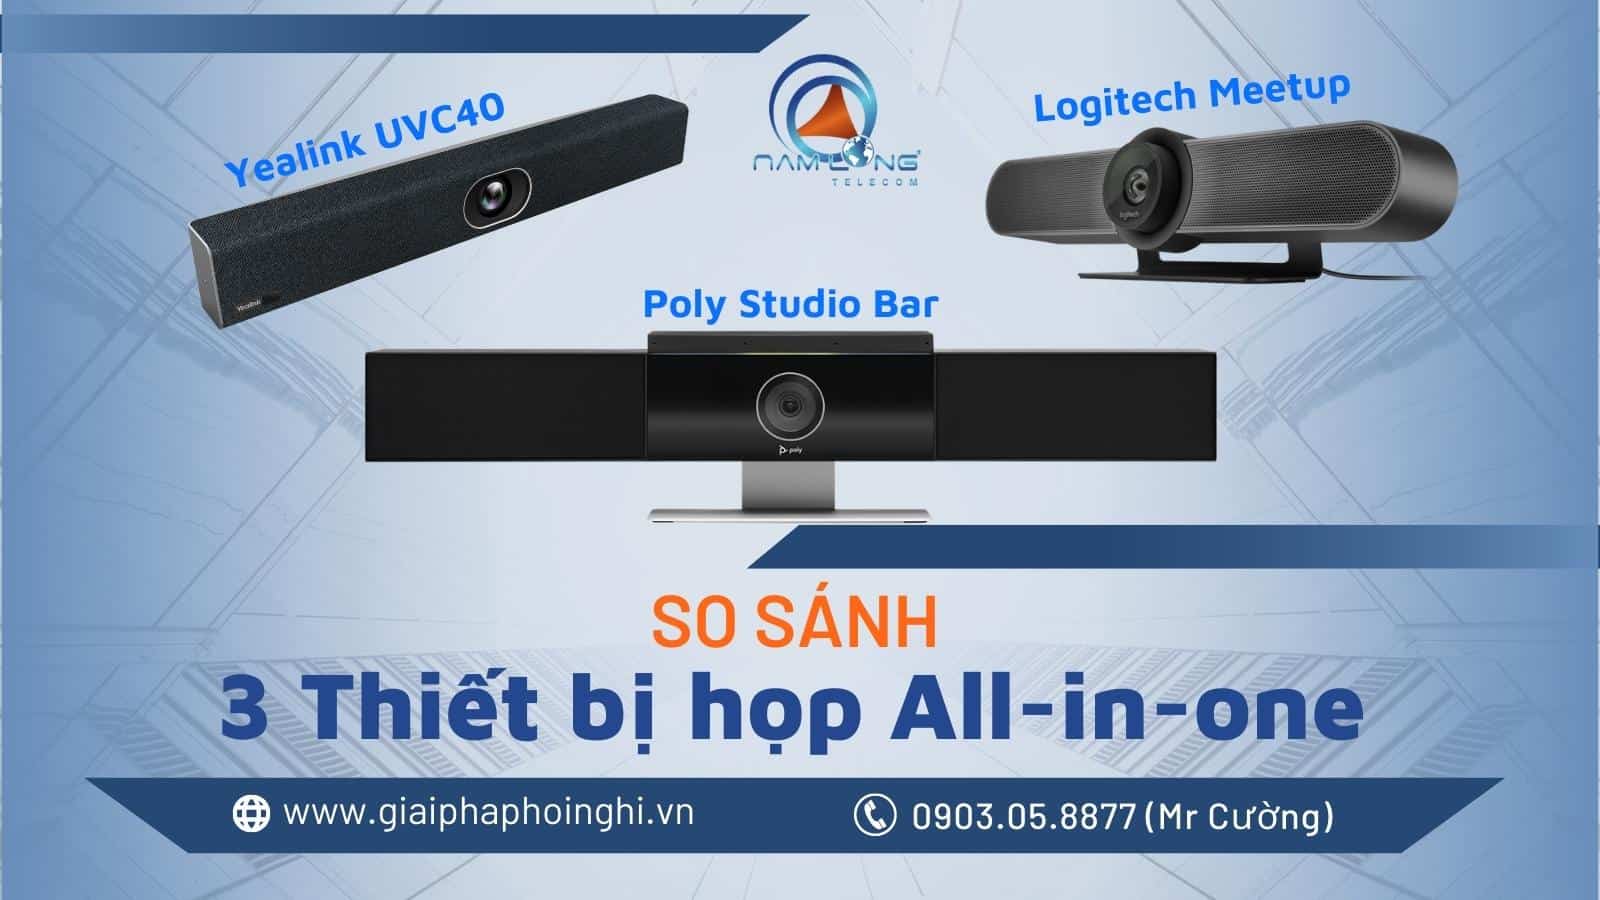 So sánh 3 thiết bị hội nghị Poly Studio Bar - Logitech MeetUp - Yealink UVC40